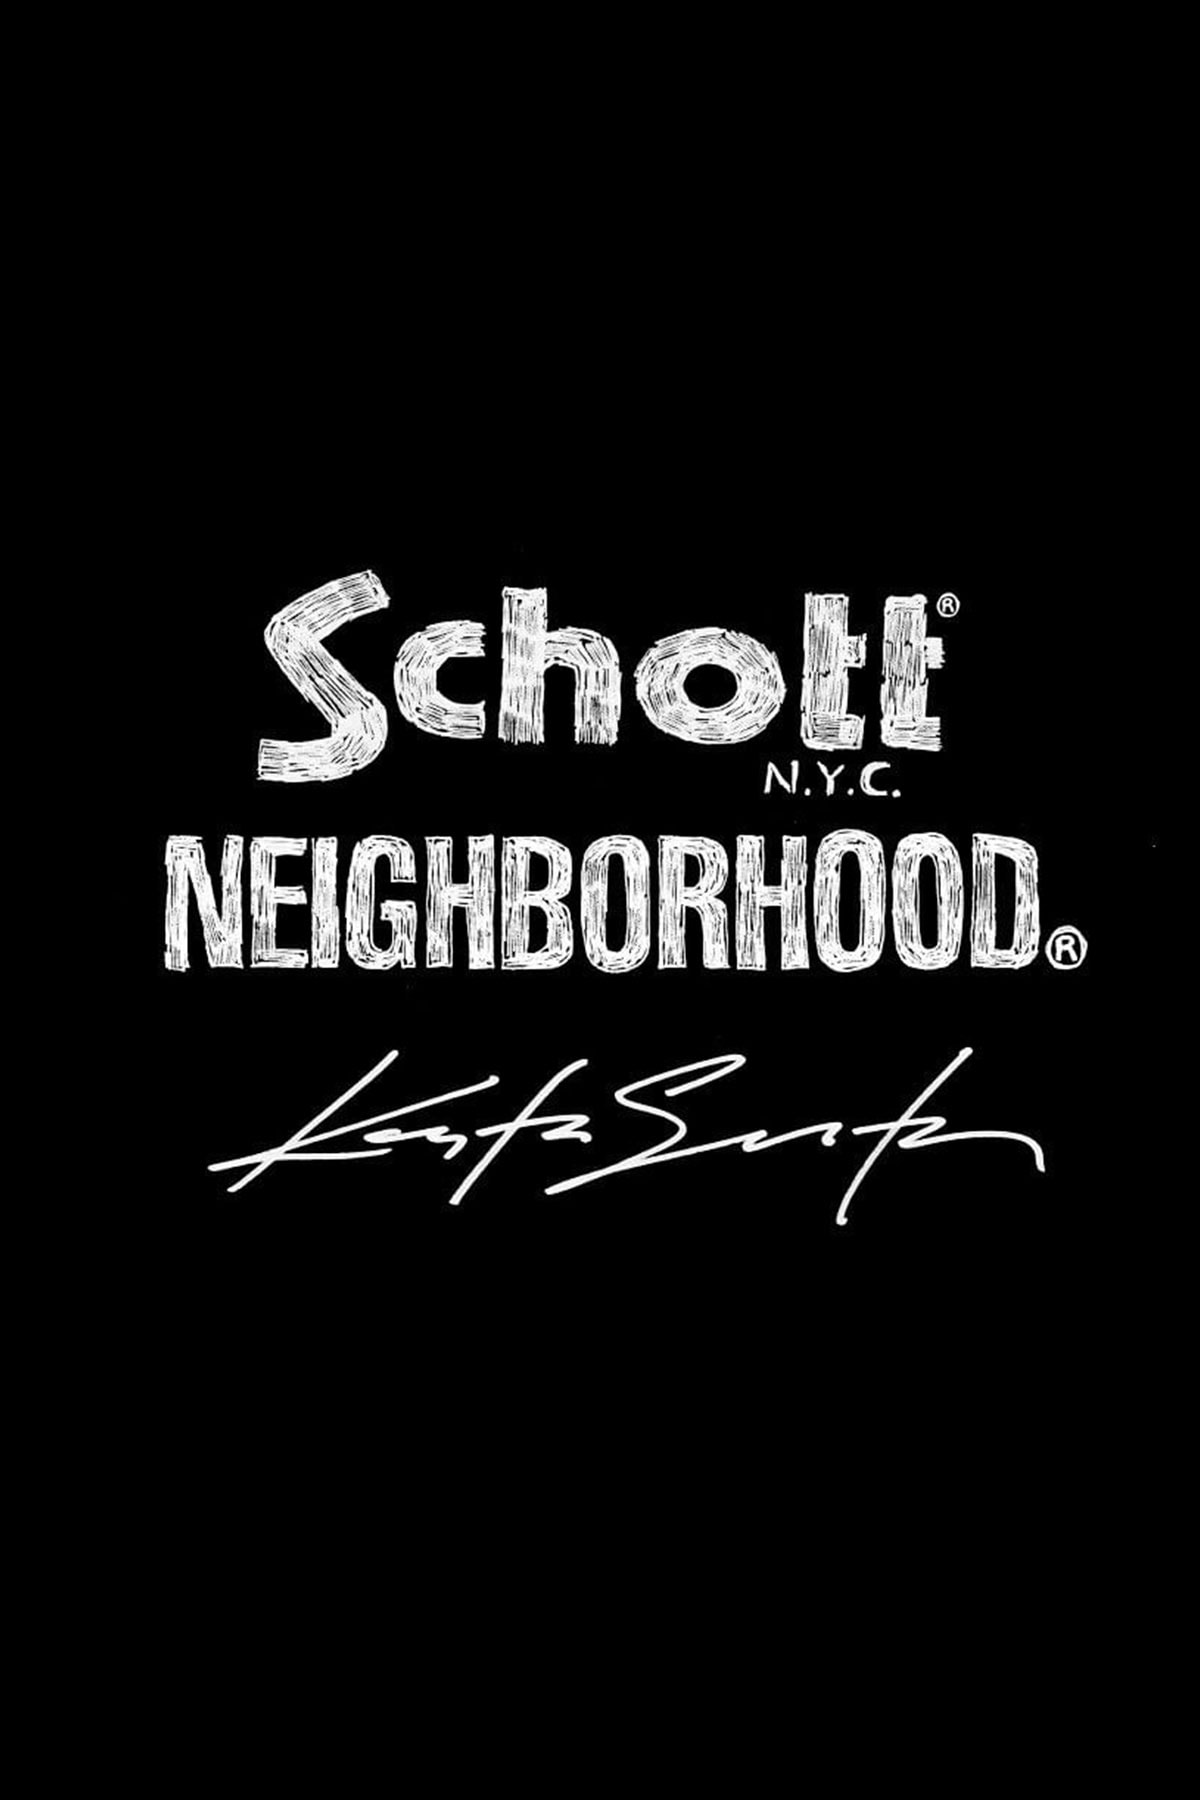 ネイバーフッドがショット x コスタス・セレメティスとのコラボレーションを予告 NEIGHBORHOOD announces Schott featuring Kostas Seremetis collaboration fall winter 2023 release news